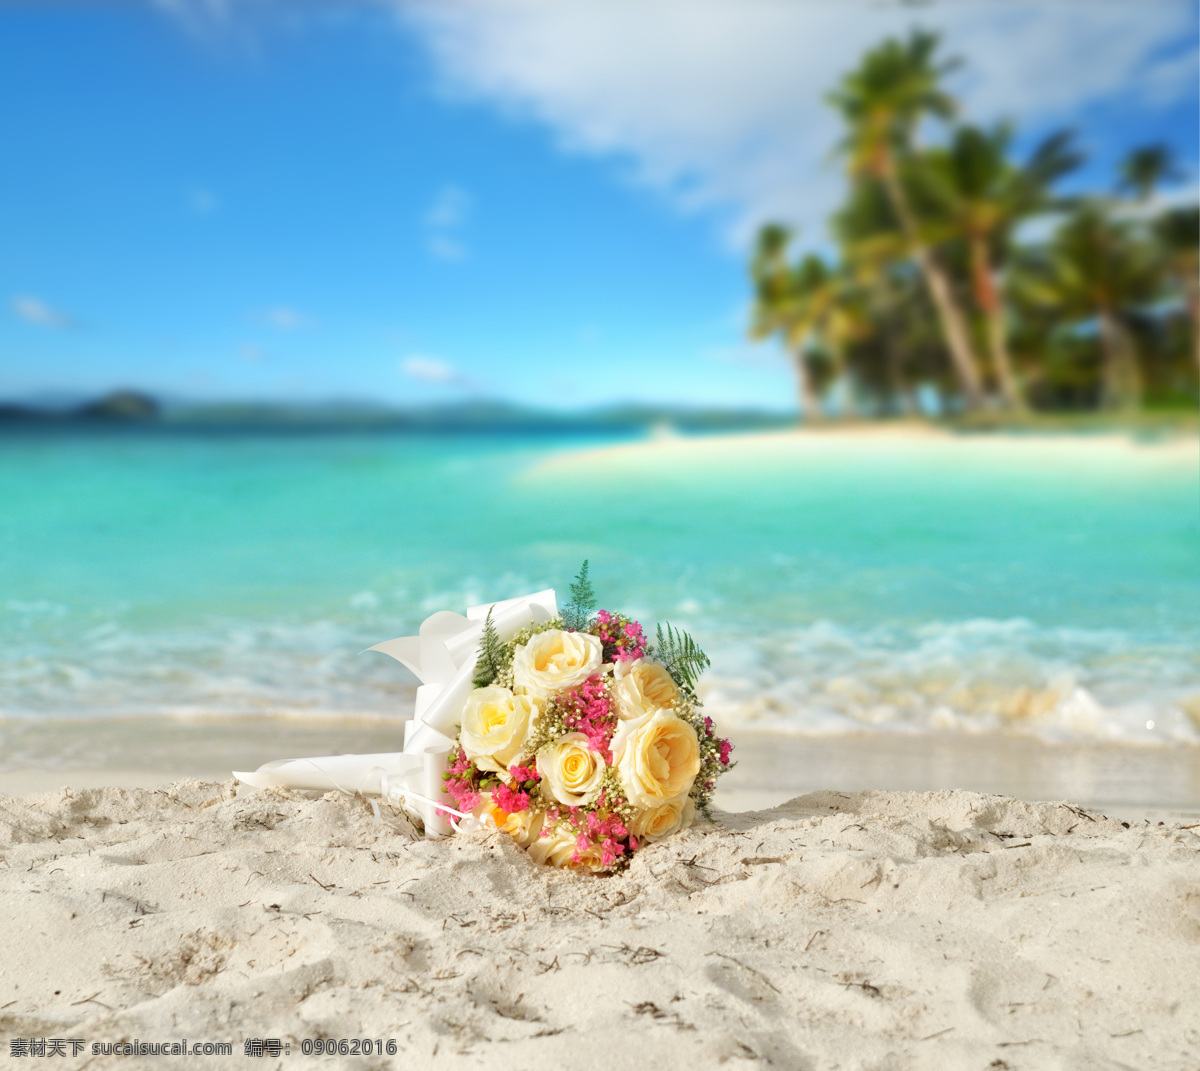 束花 玫瑰 海边 婚纱摄影 沙滩 礼品 图片类 文化艺术 节日庆祝